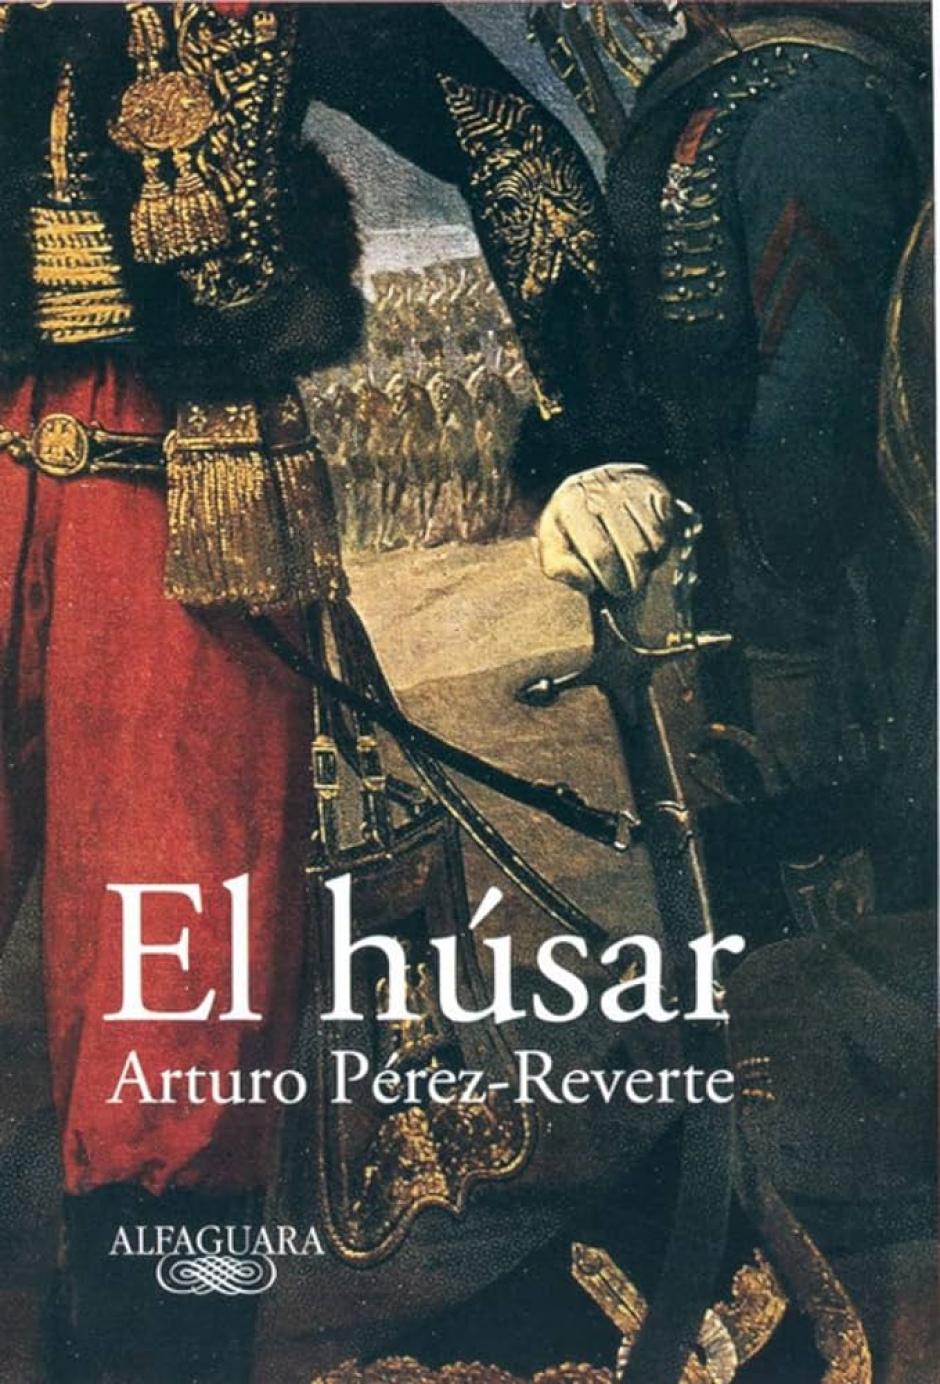 Arturo Pérez-Reverte recomienda el libro 'Jerez' para visitar la ciudad